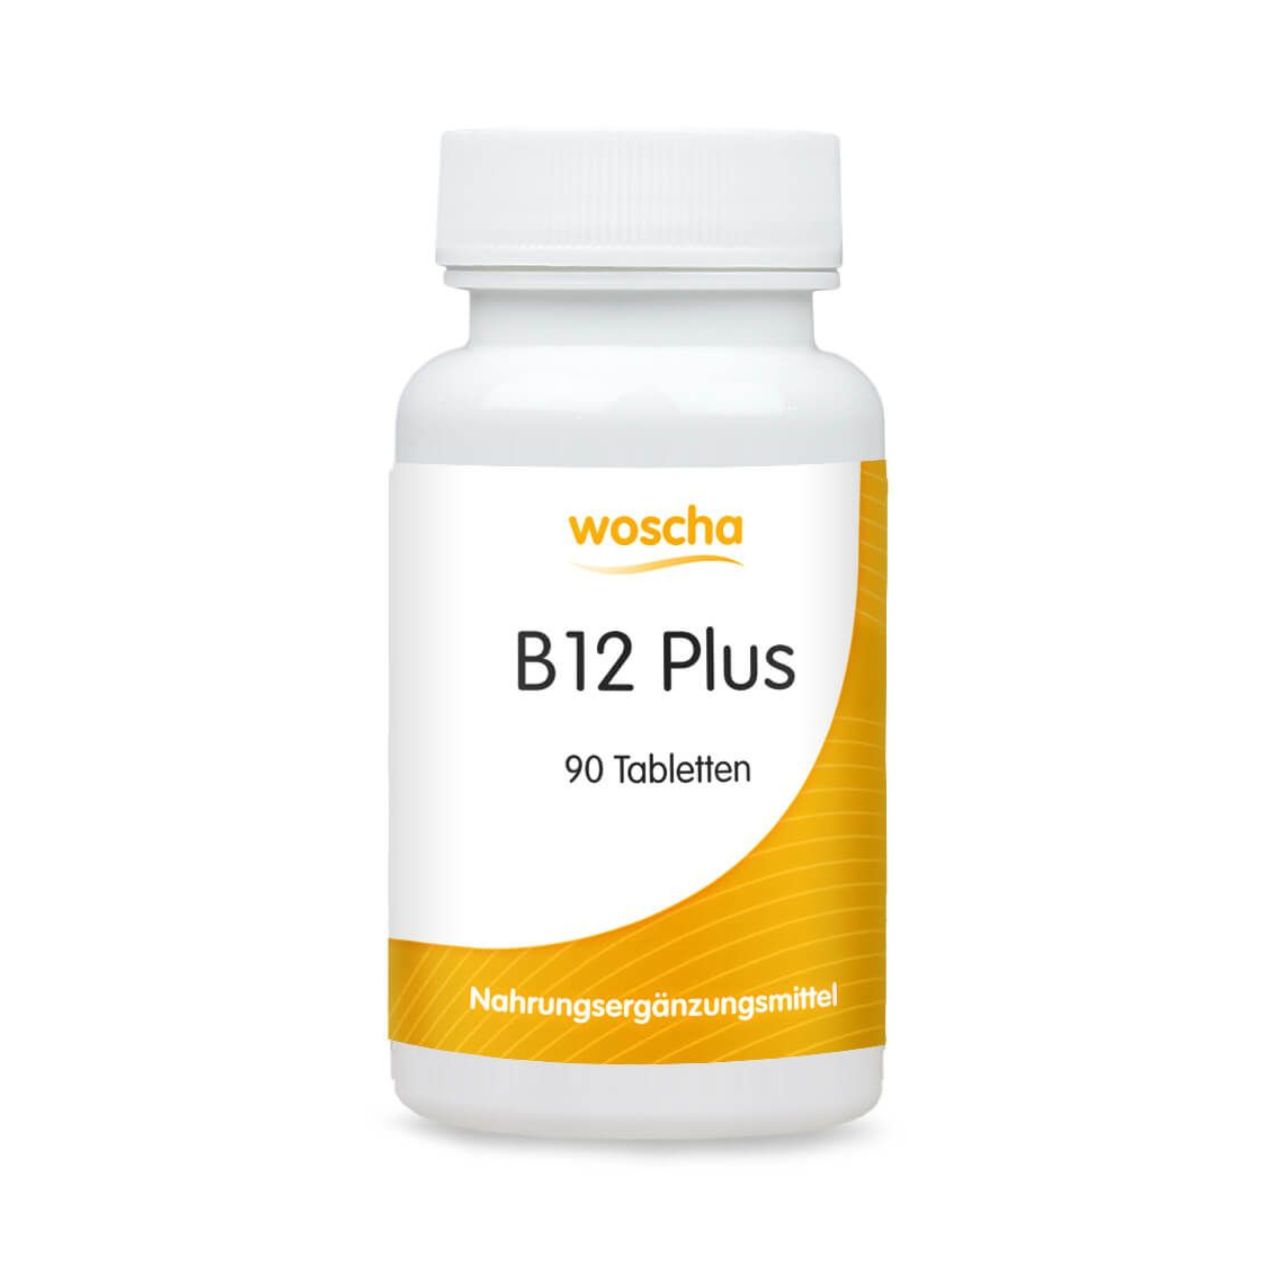 Woscha B12 Plus von podo medi beinhaltet 90 Tabletten